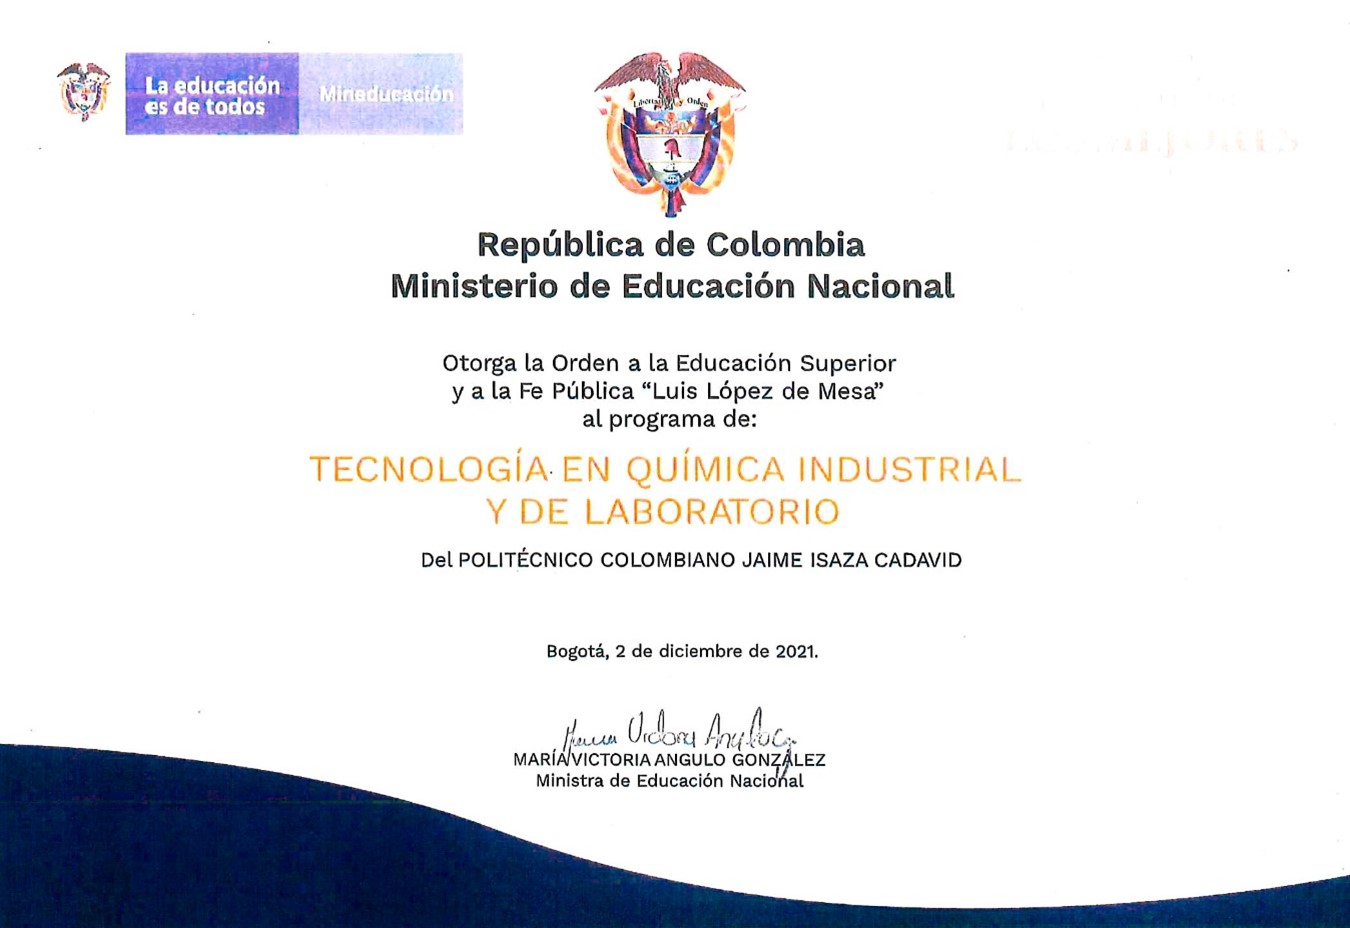 Programa de Tecnología en Química Industrial y de Laboratorio recibió la Orden a la Educación Superior y la Fe Pública “Luis López de Mesa” por parte del Ministerio de Educación Nacional (MEN)